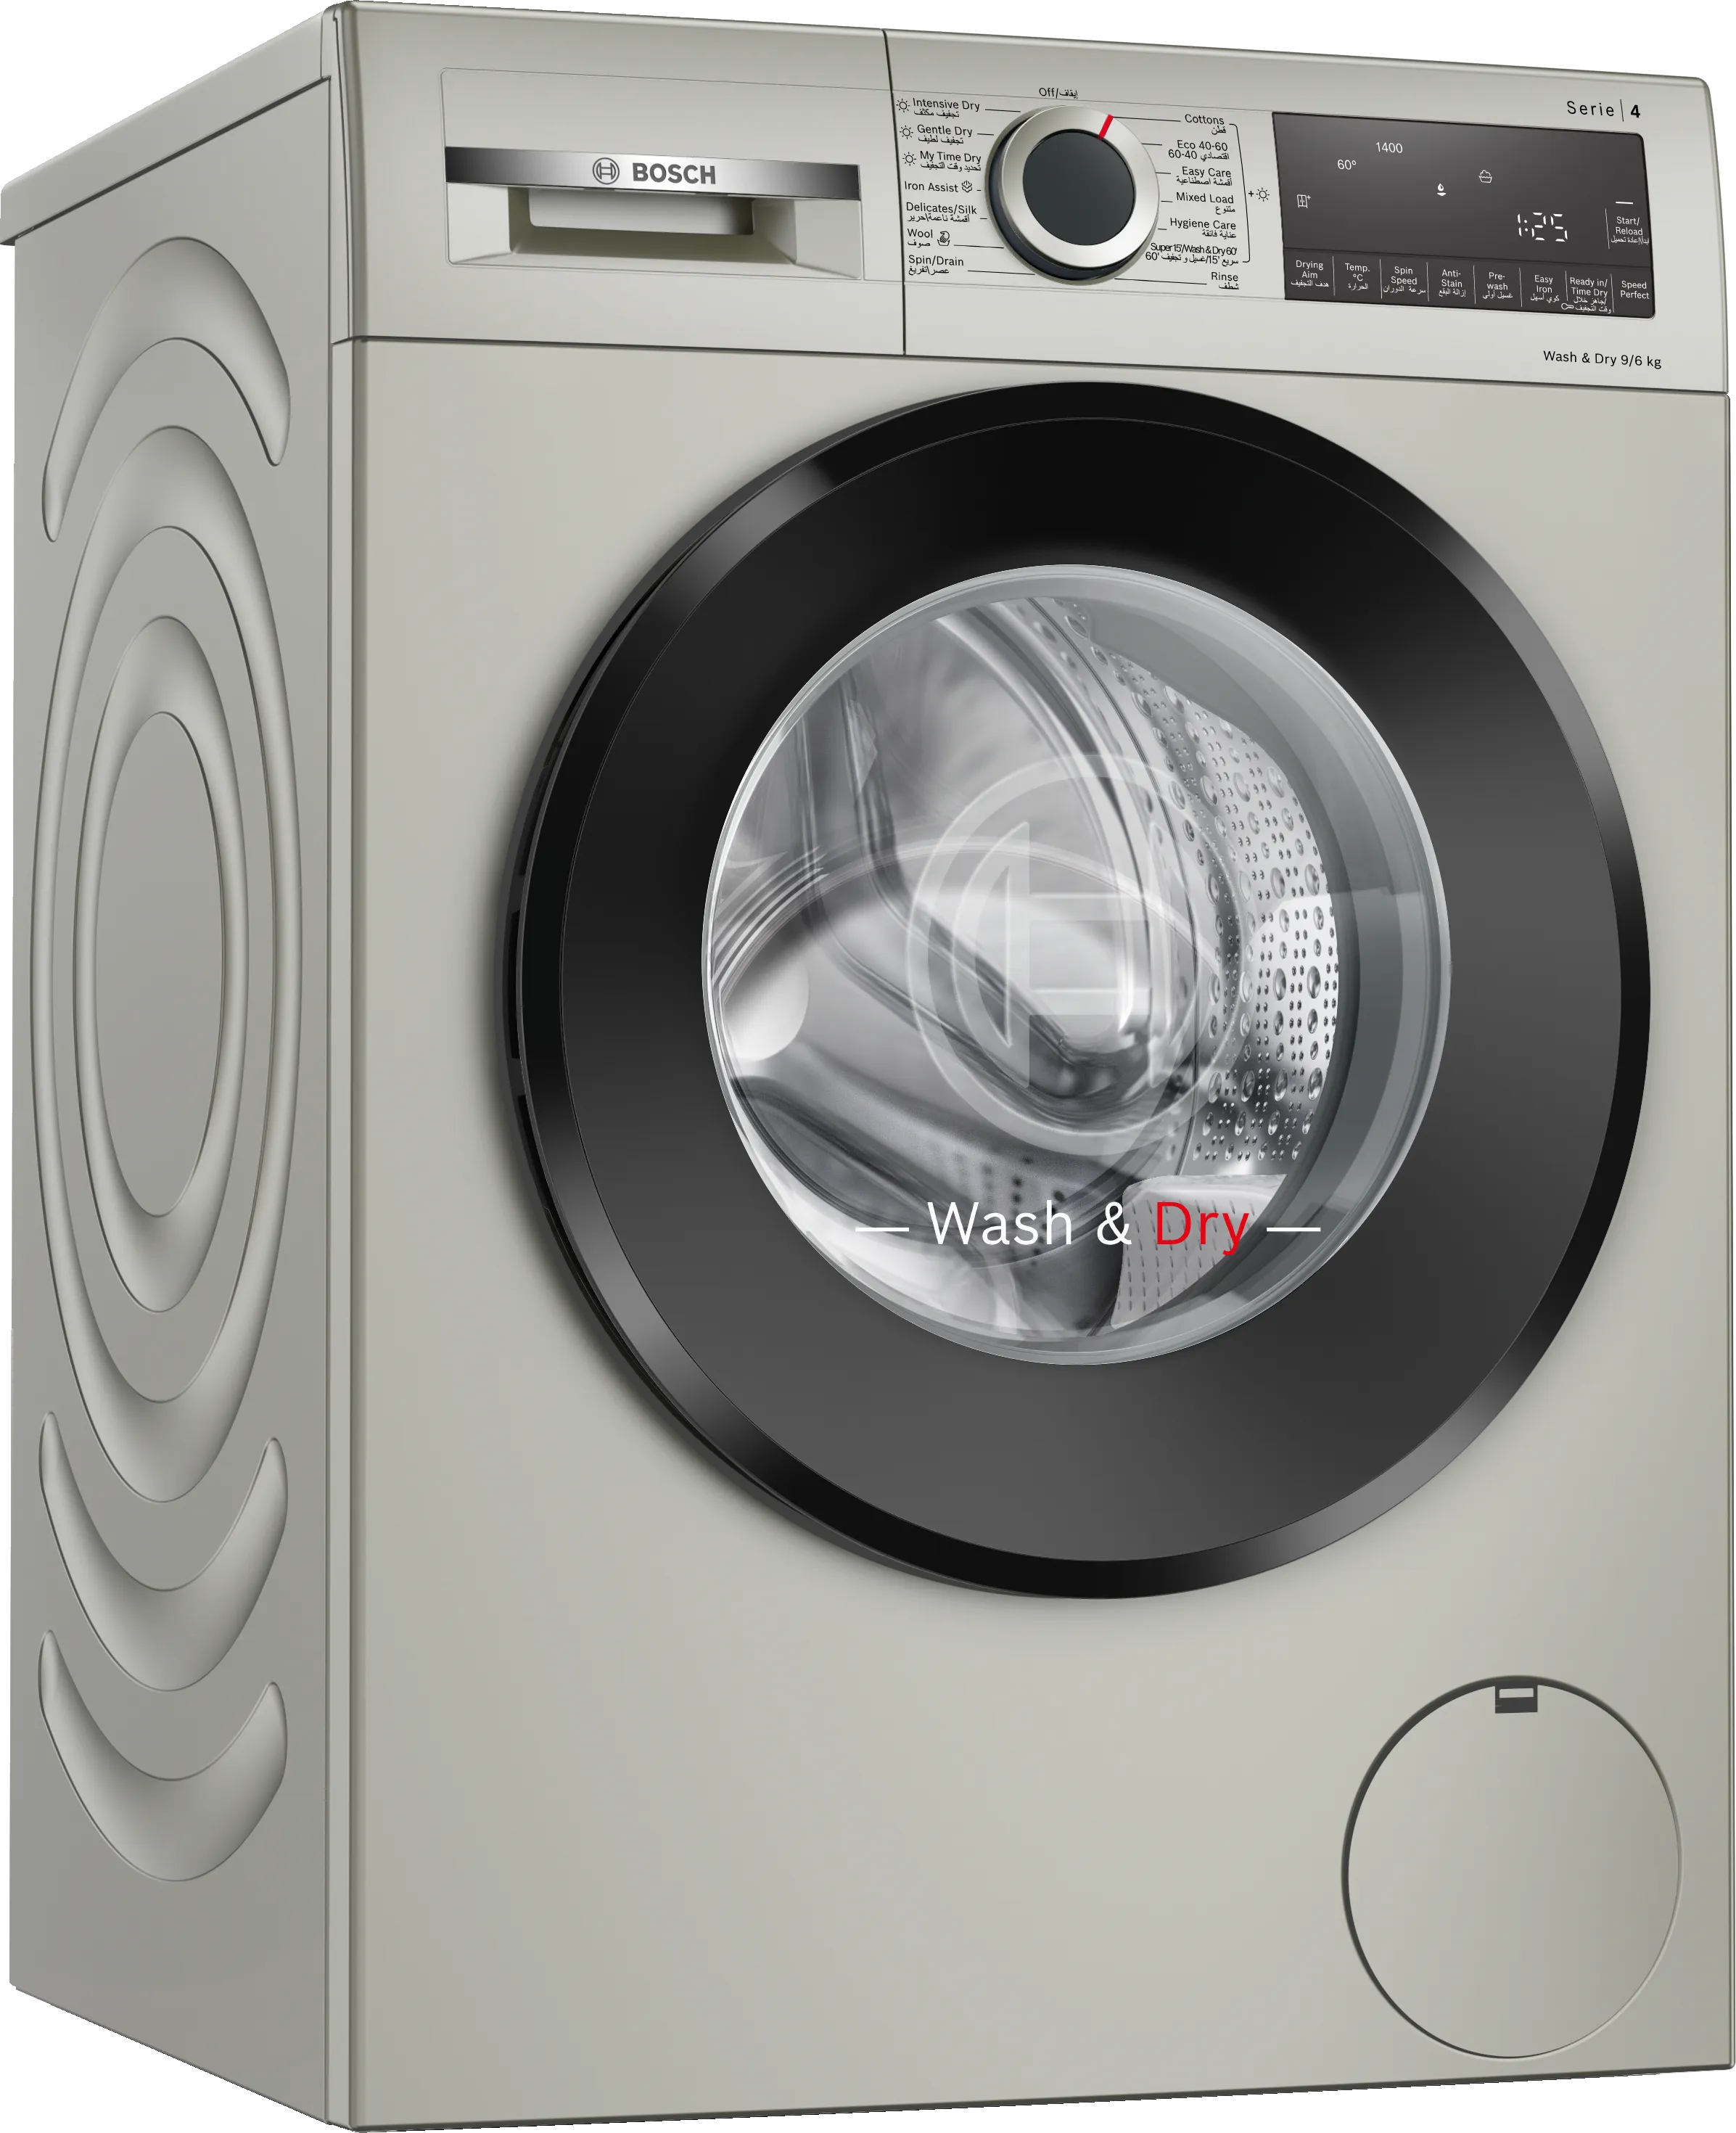 Series 4 washer dryer 9/6 kg , Silver inox 